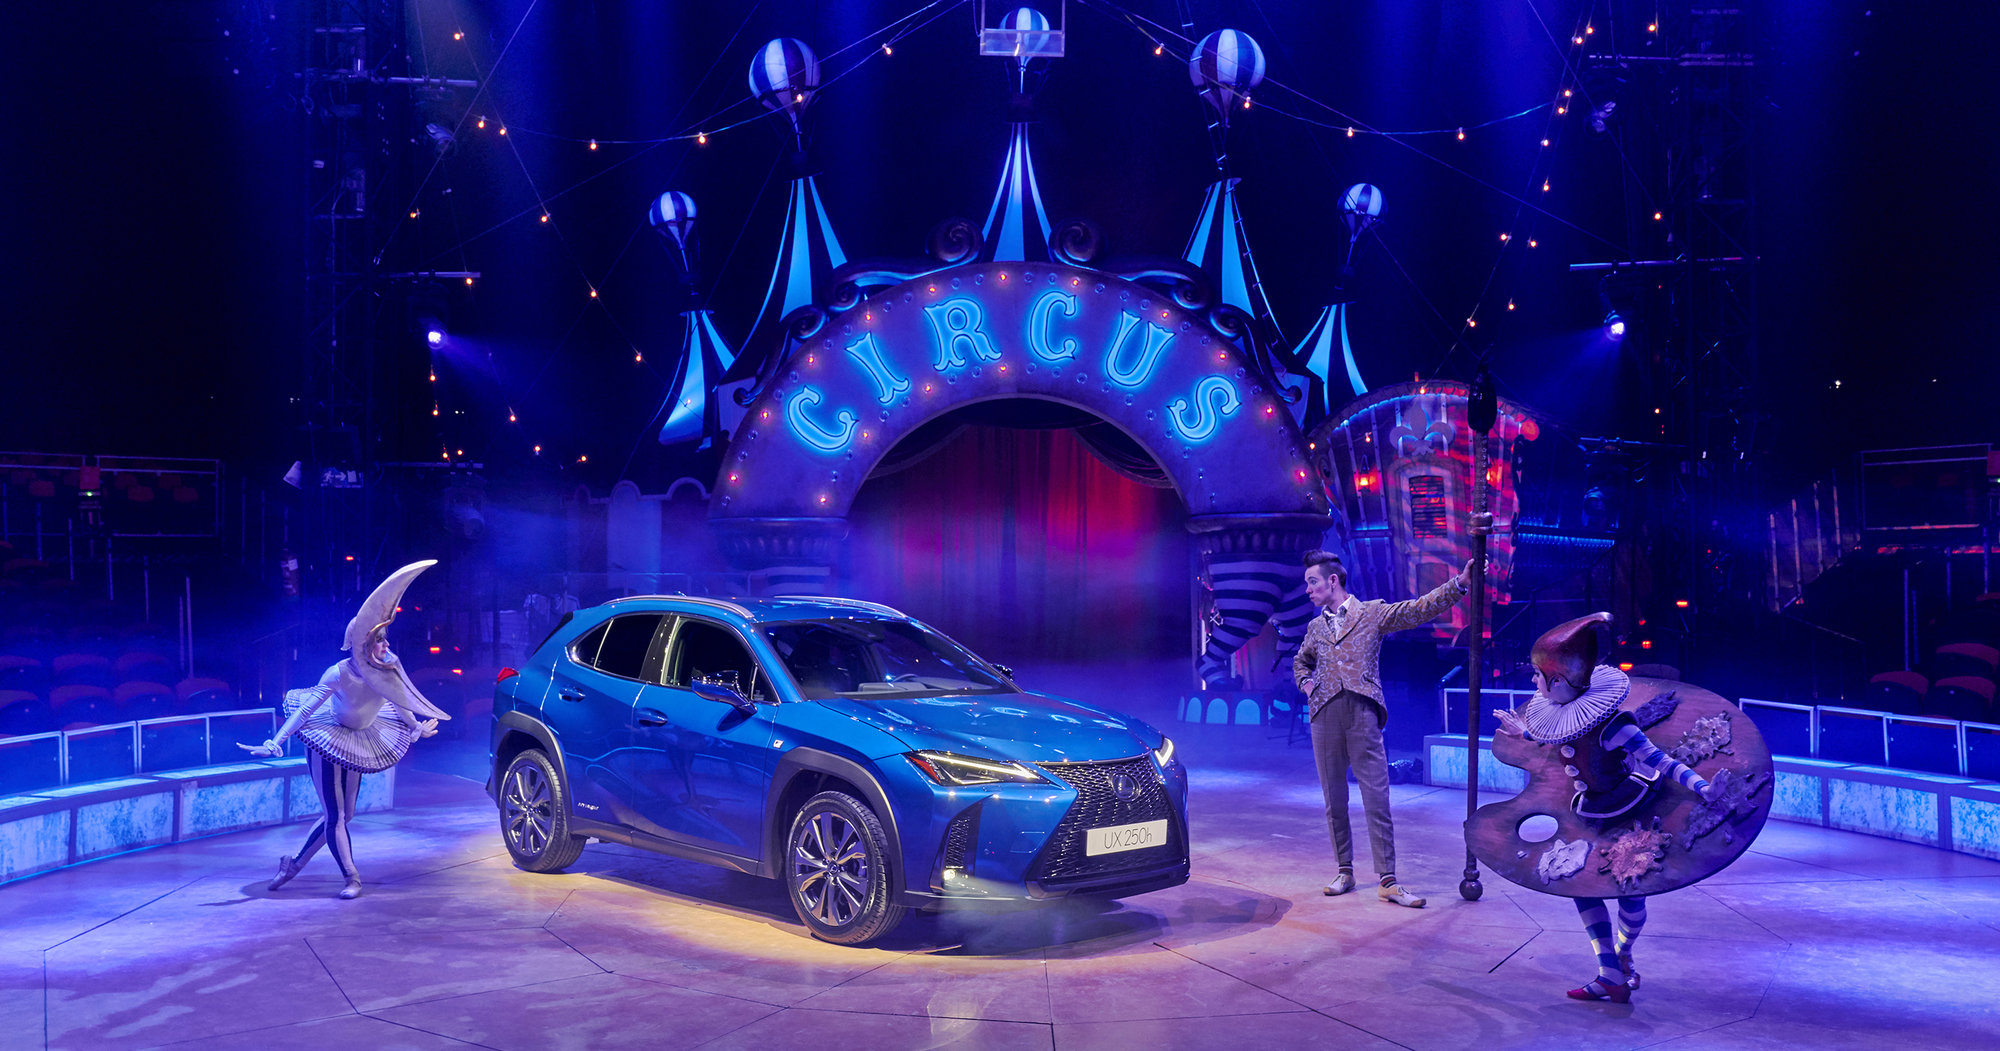 Galería: El nuevo Lexus UX 250h Híbrido protagonista en Circlassica, el circo mágico de la Navidad